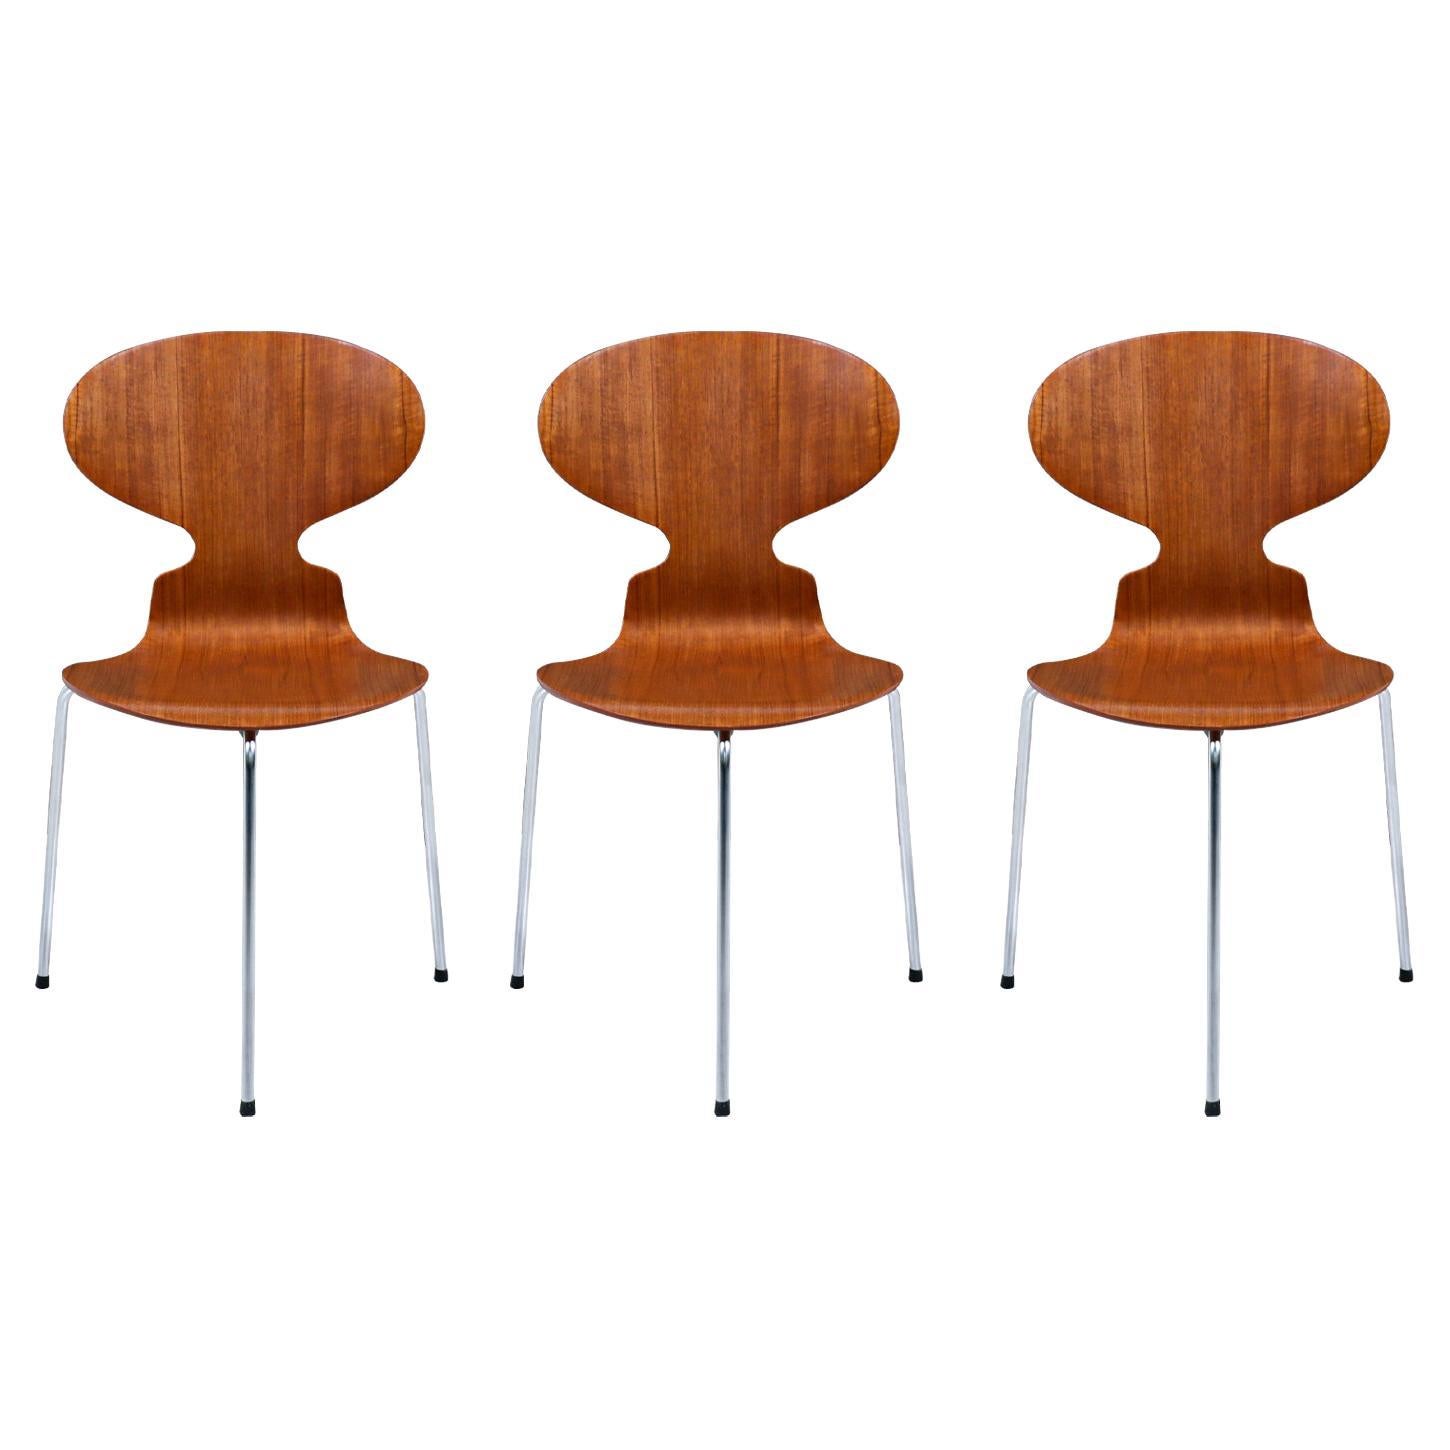 Arne Jacobsen "Ant" Model-3100 Teak Chair for Fritz Hansen